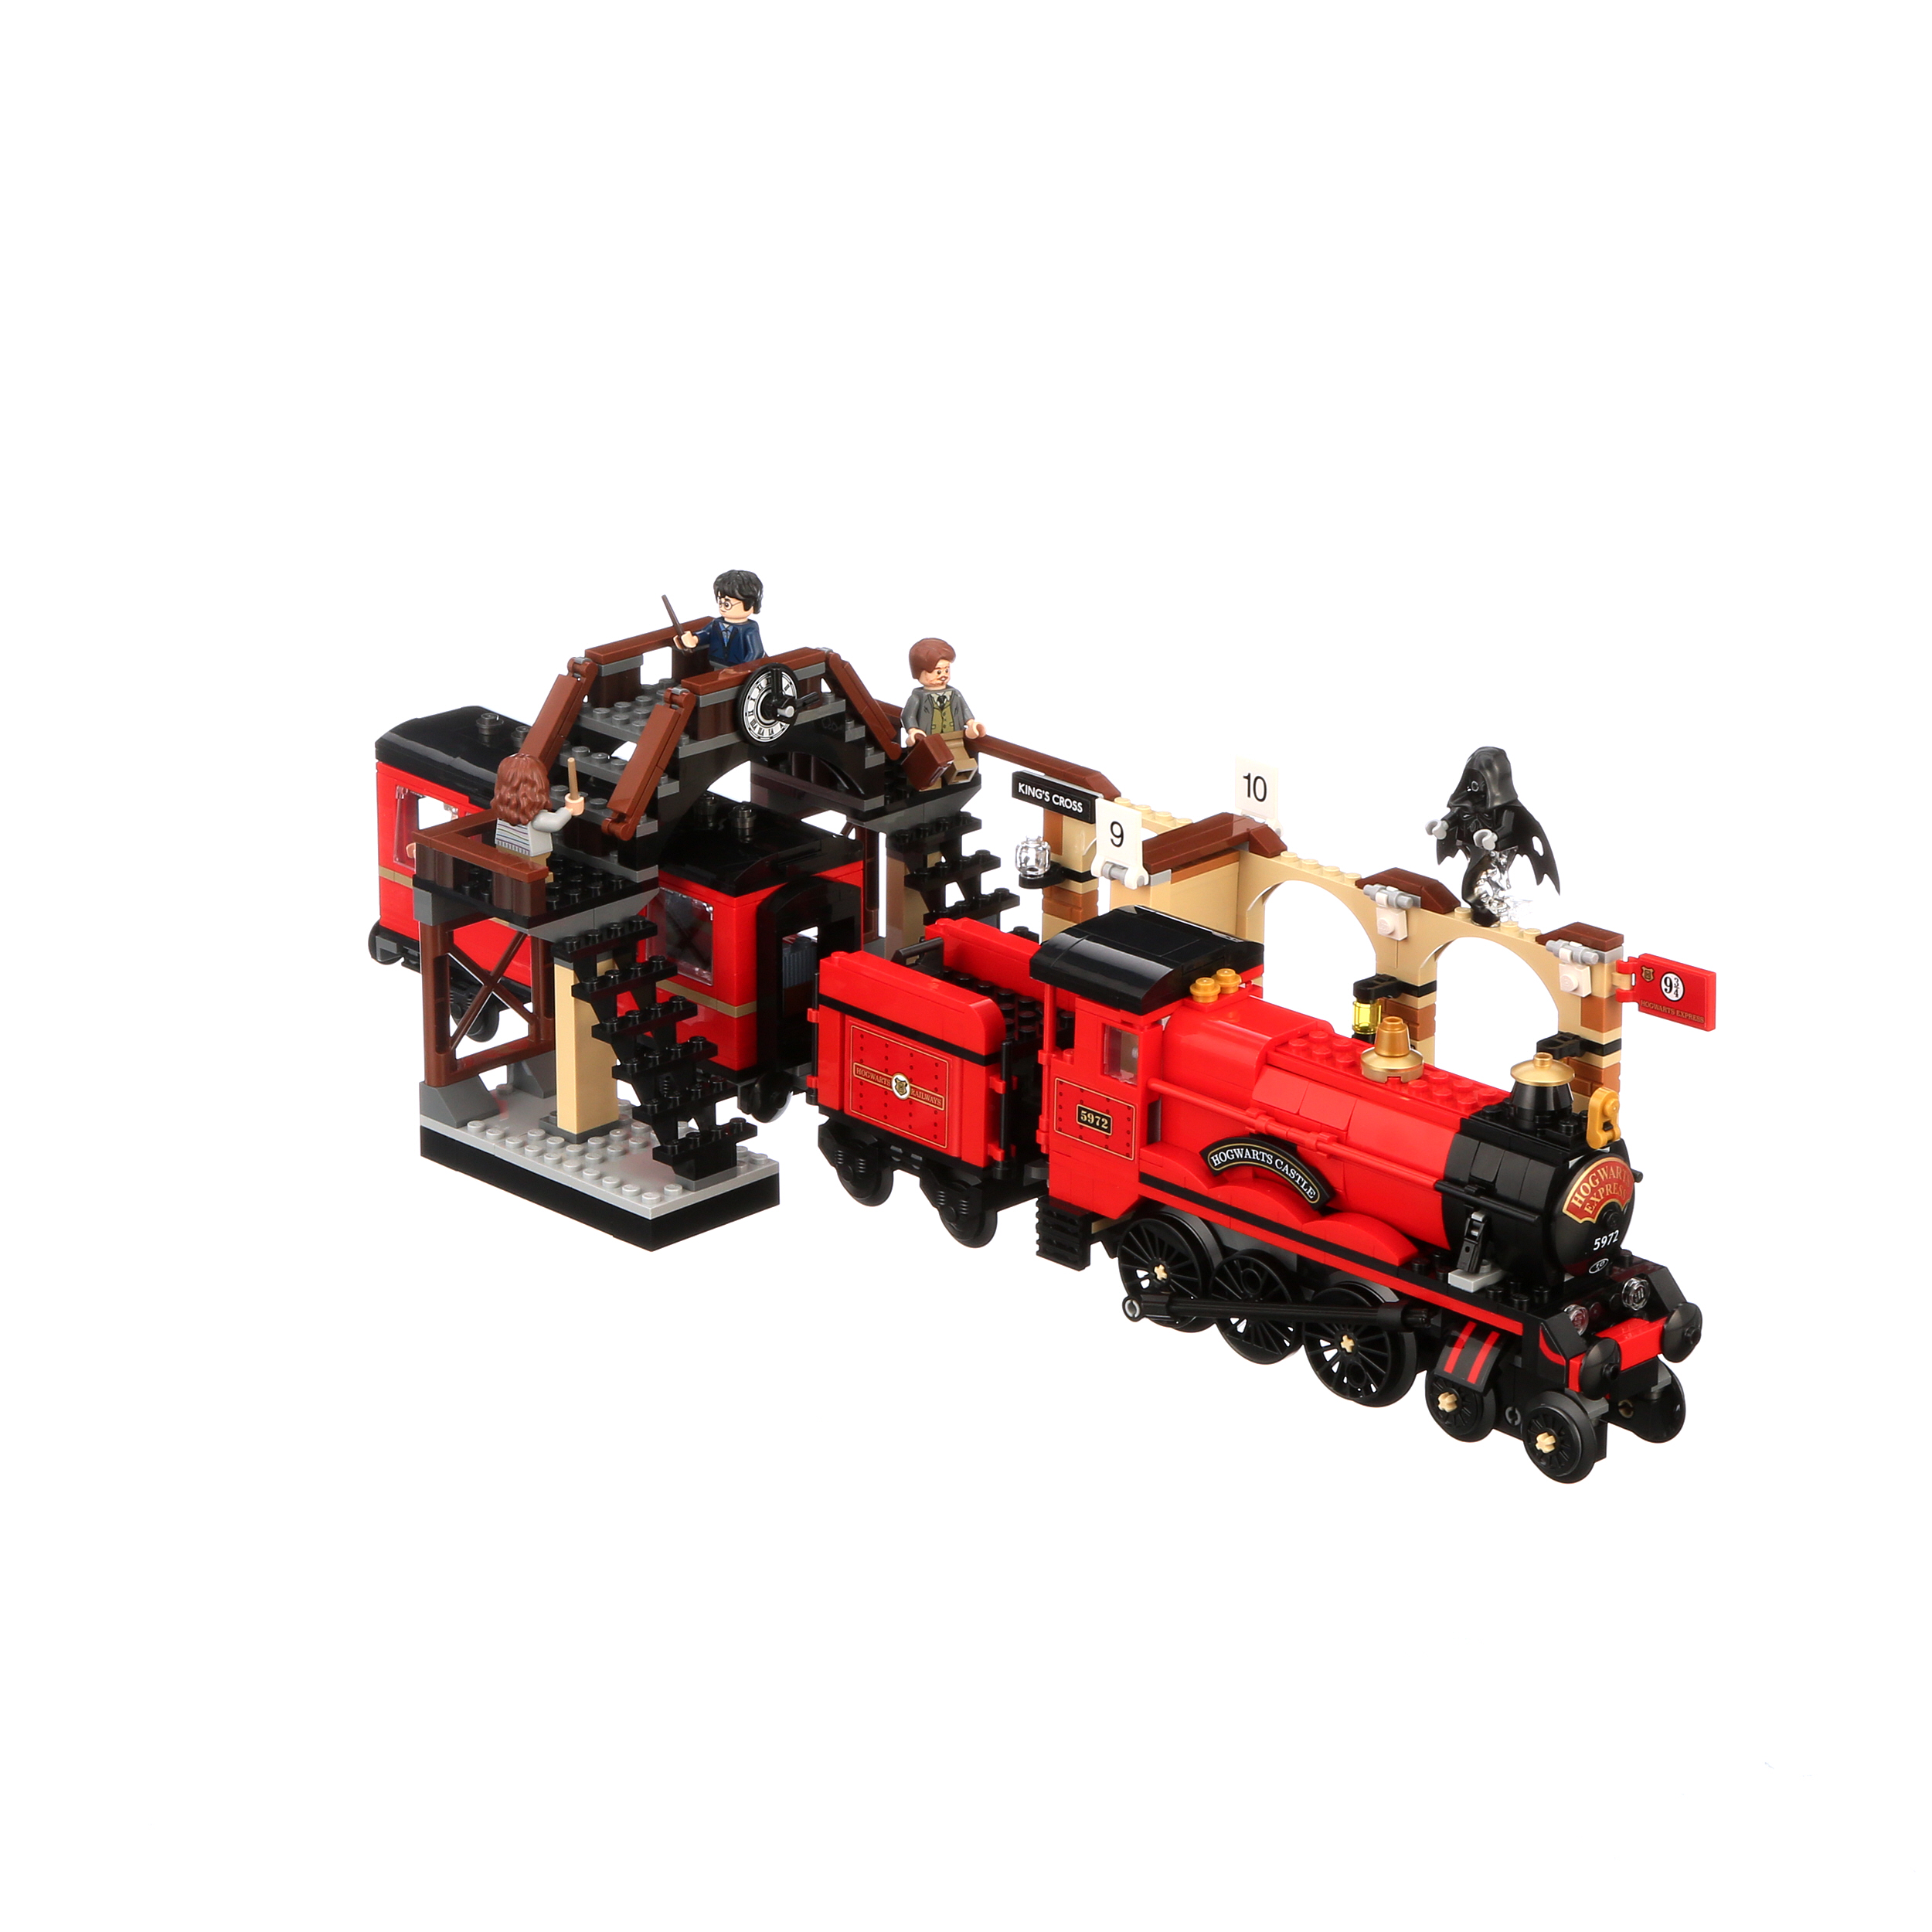 LEGO Harry Potter 75955 Le Poudlard Express, Jouet de Train Modélisme pour  Enfants